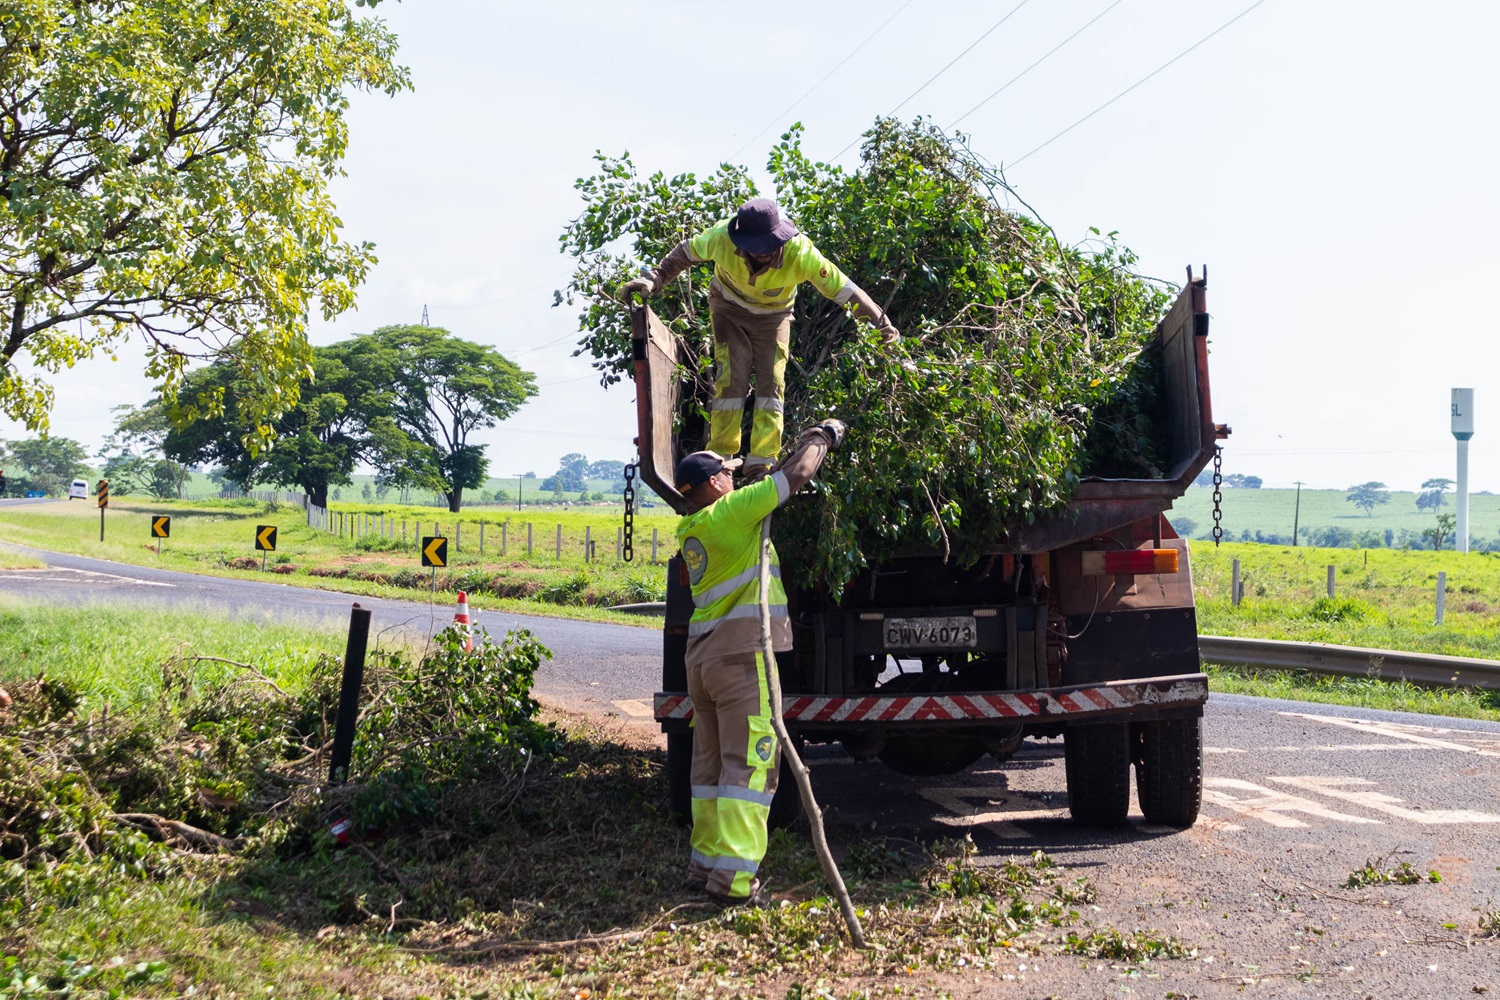 Equipes trabalham para remoção de árvores e galhos caídos. Fotos: Thomas Volpato Moutropoulos / Prefeitura de Urupês.